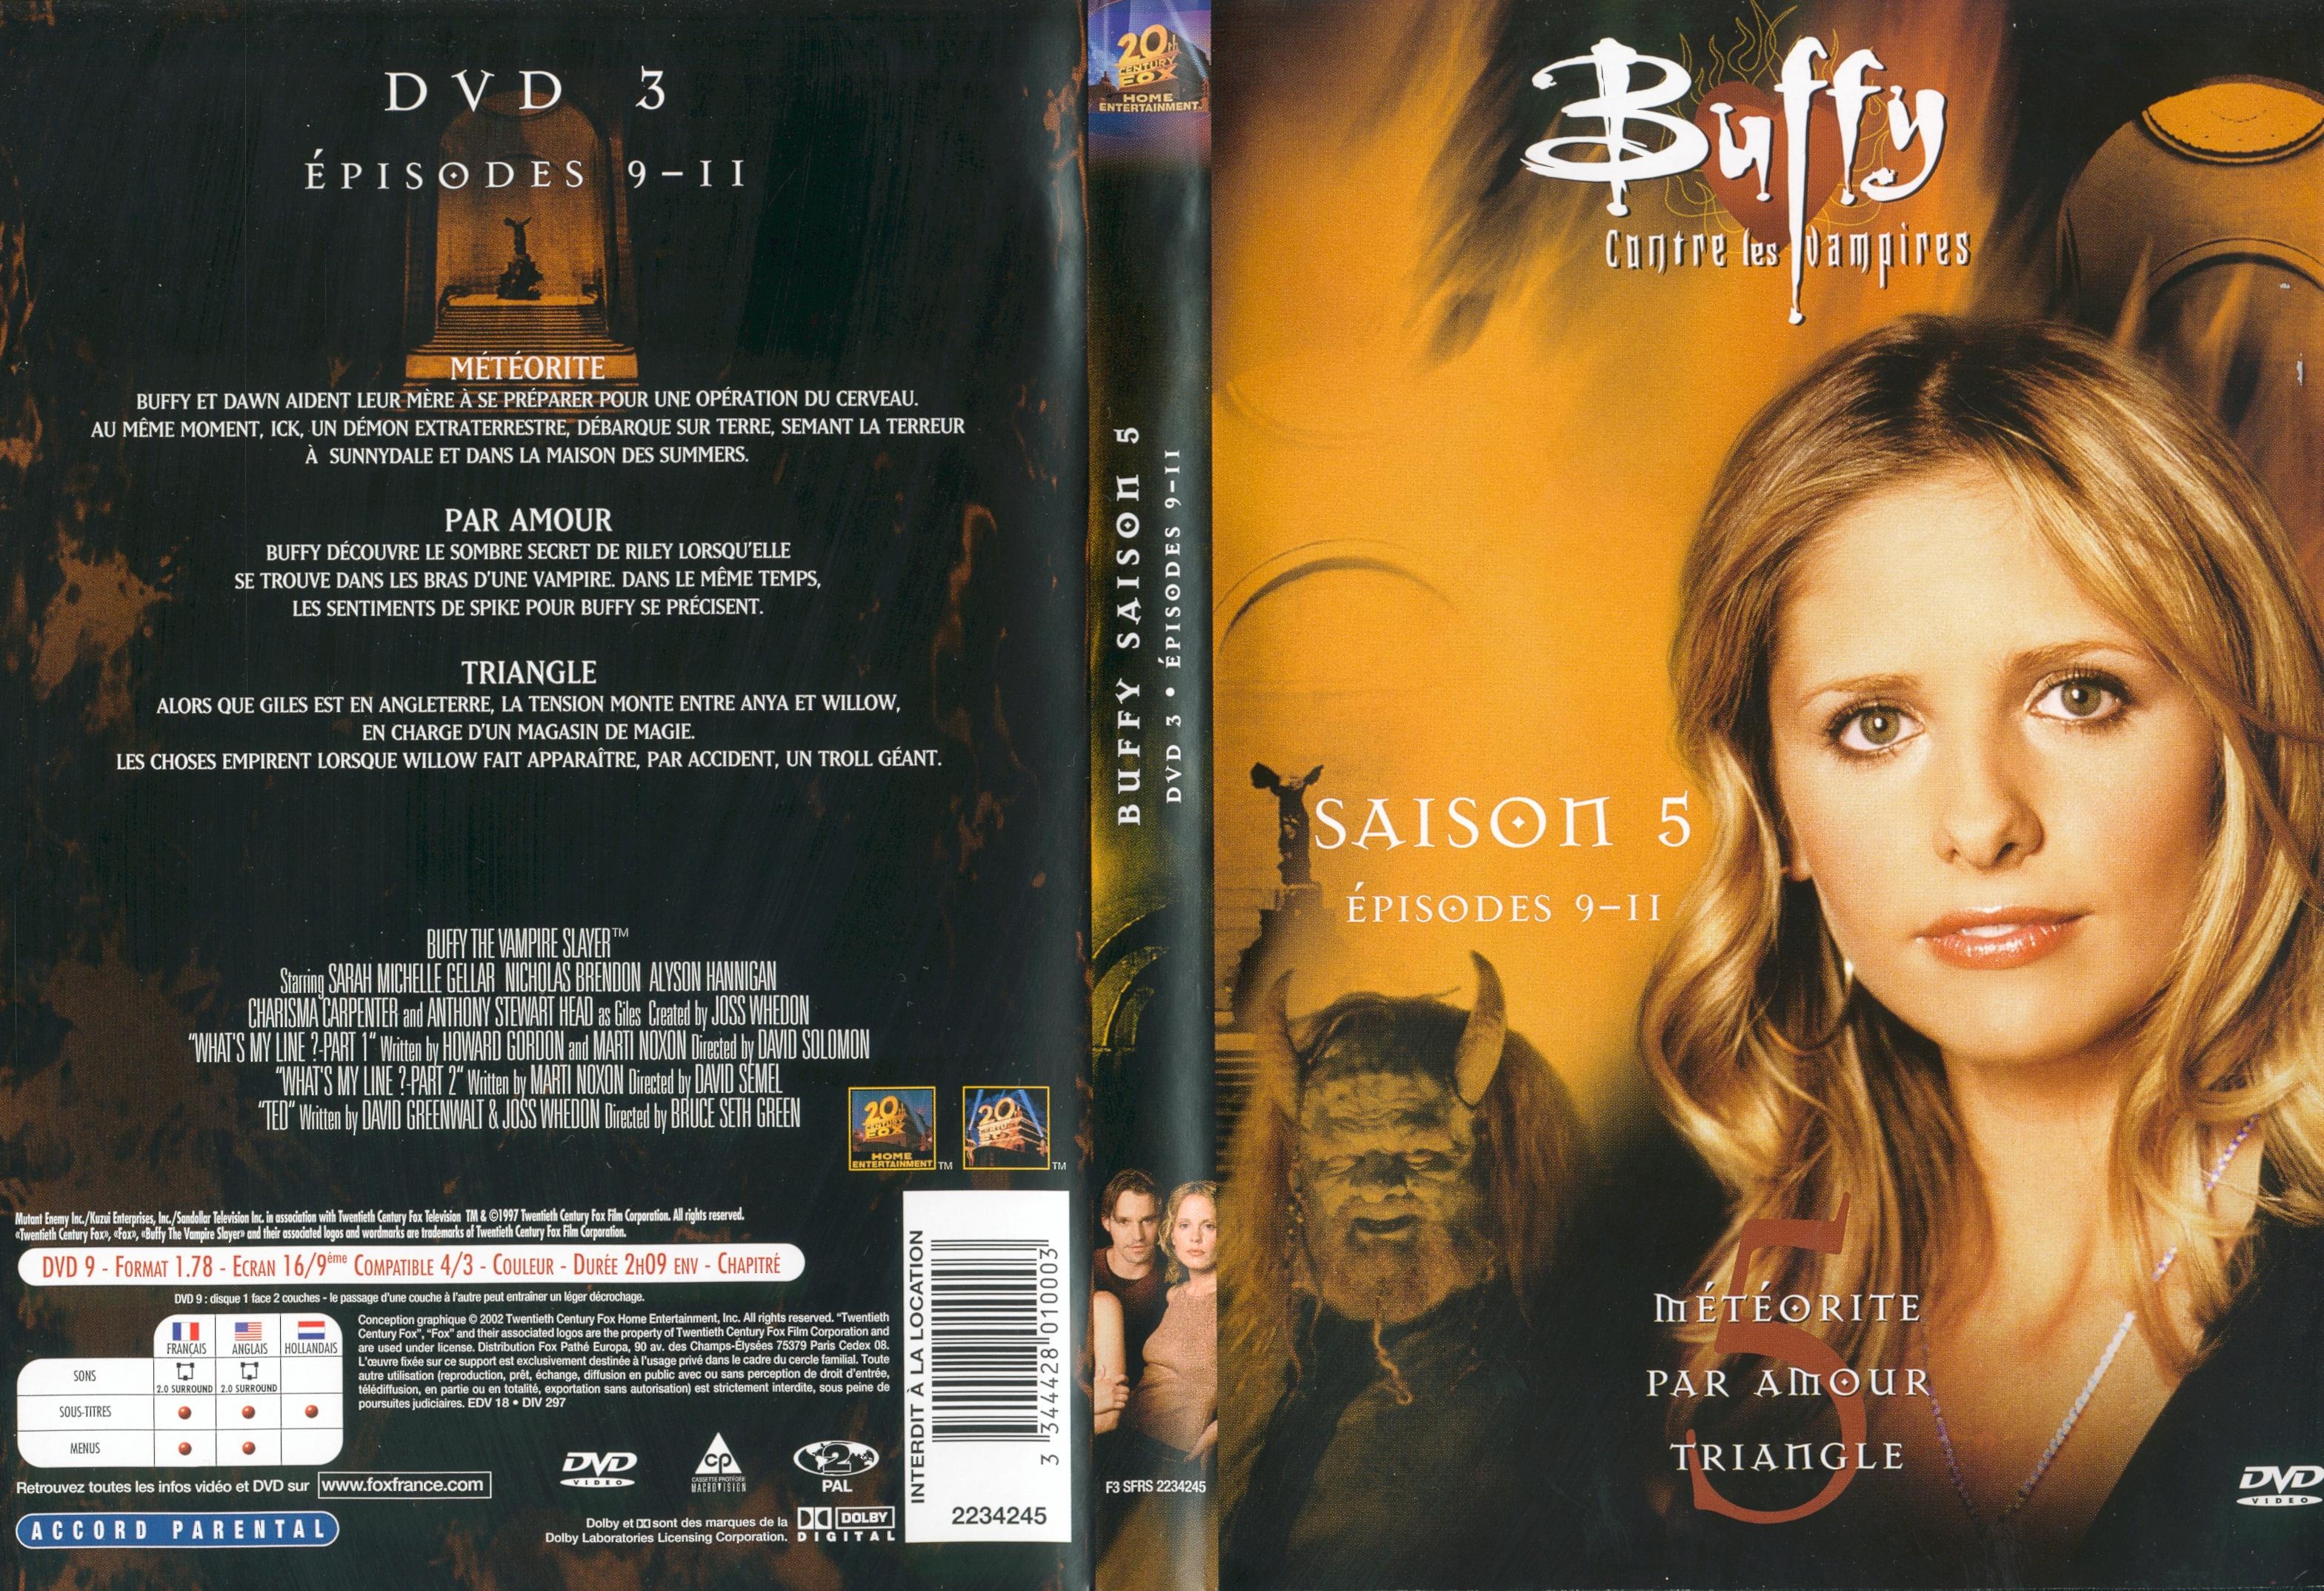 Jaquette DVD Buffy contre les vampires Saison 5 DVD 3